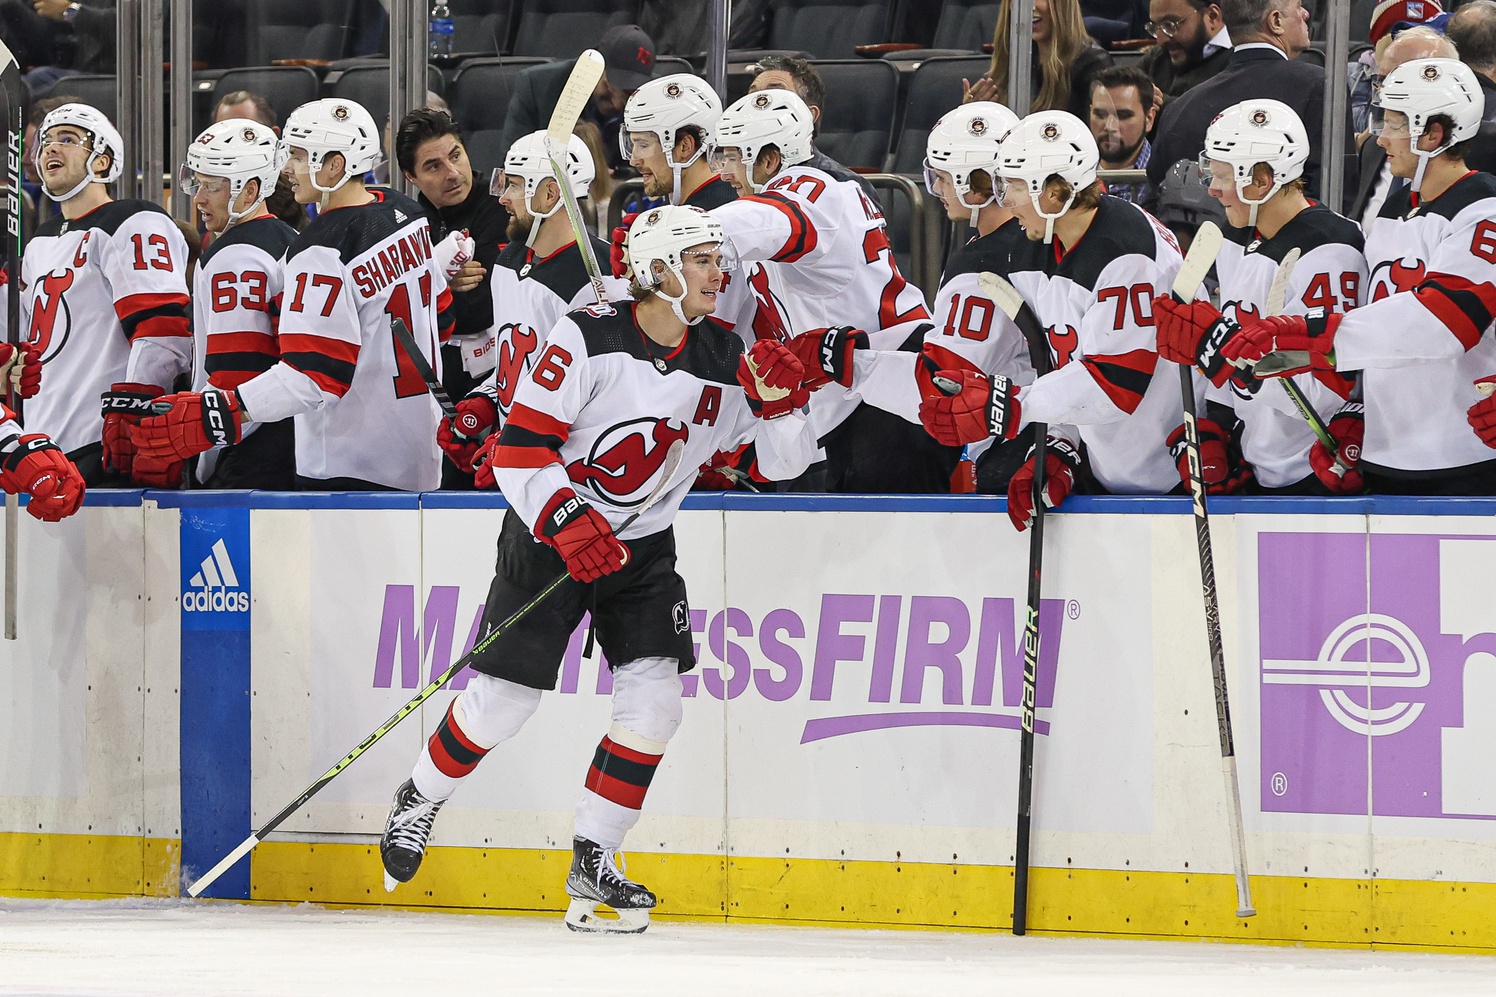 Devils vs Rangers NHL Odds, Picks, Predictions